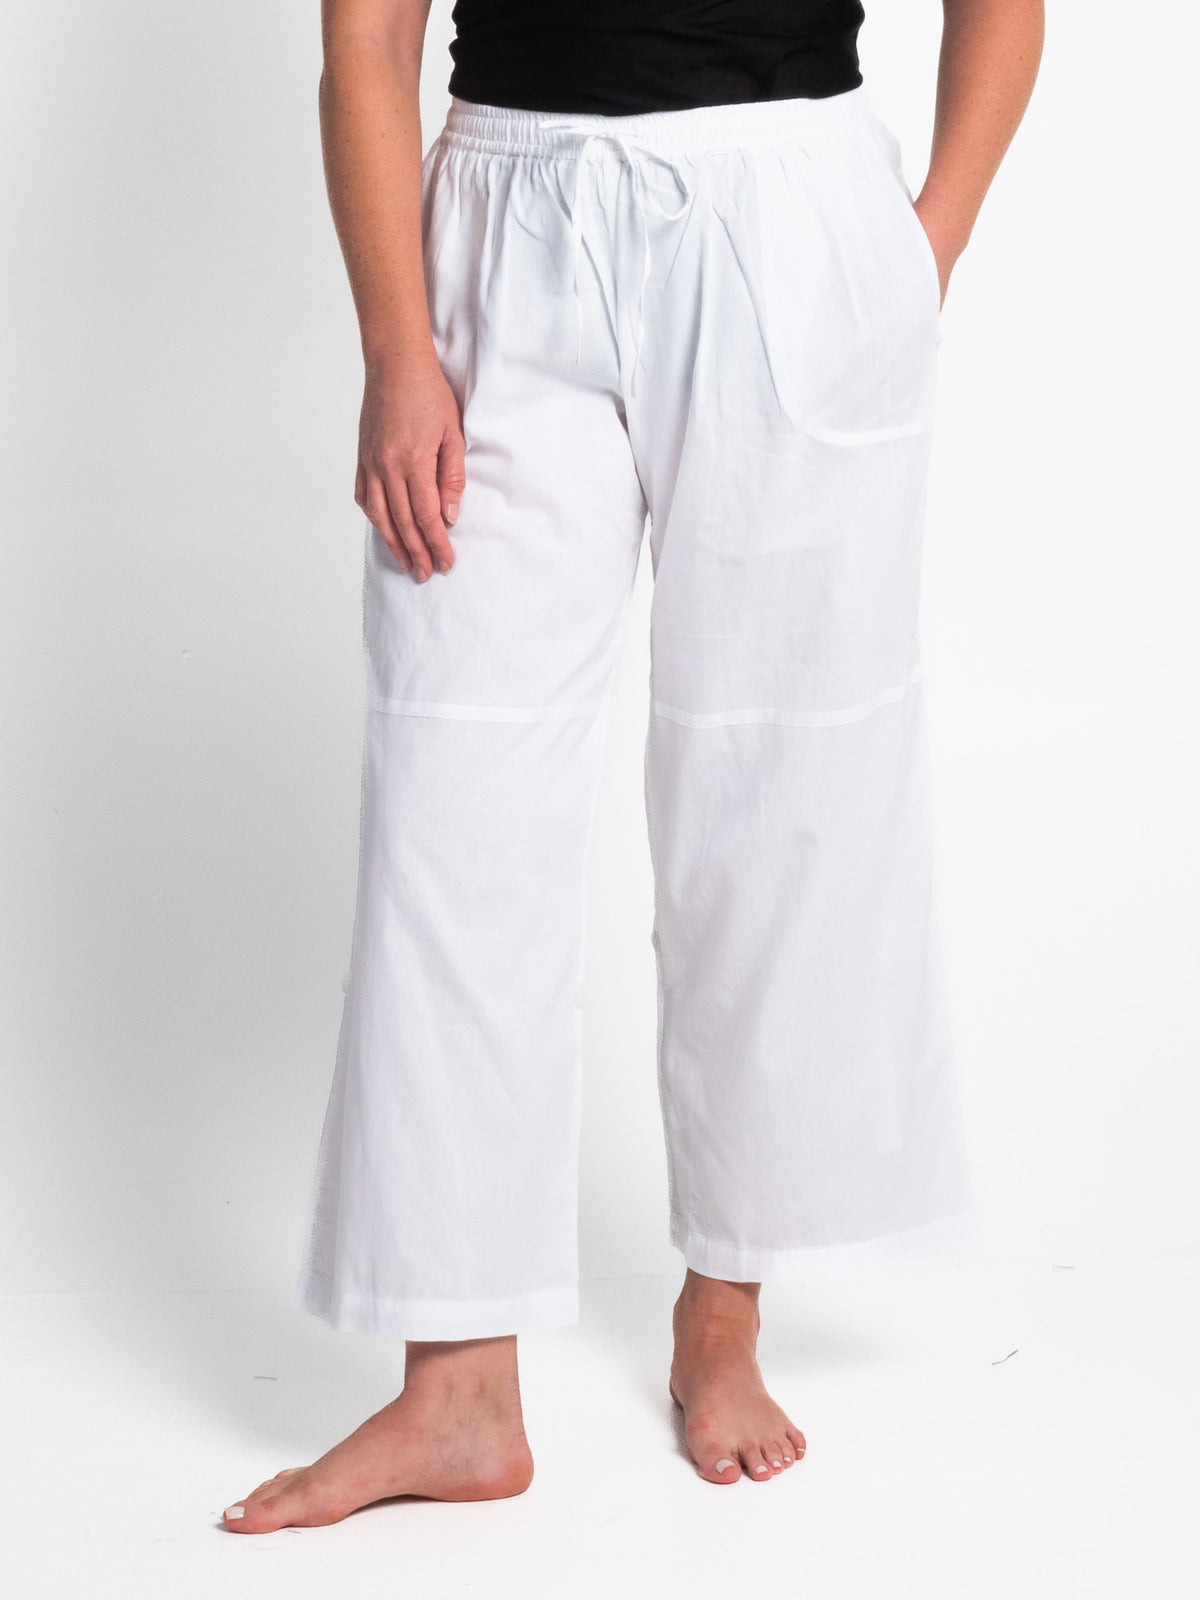 Sorrento White Cotton Pants